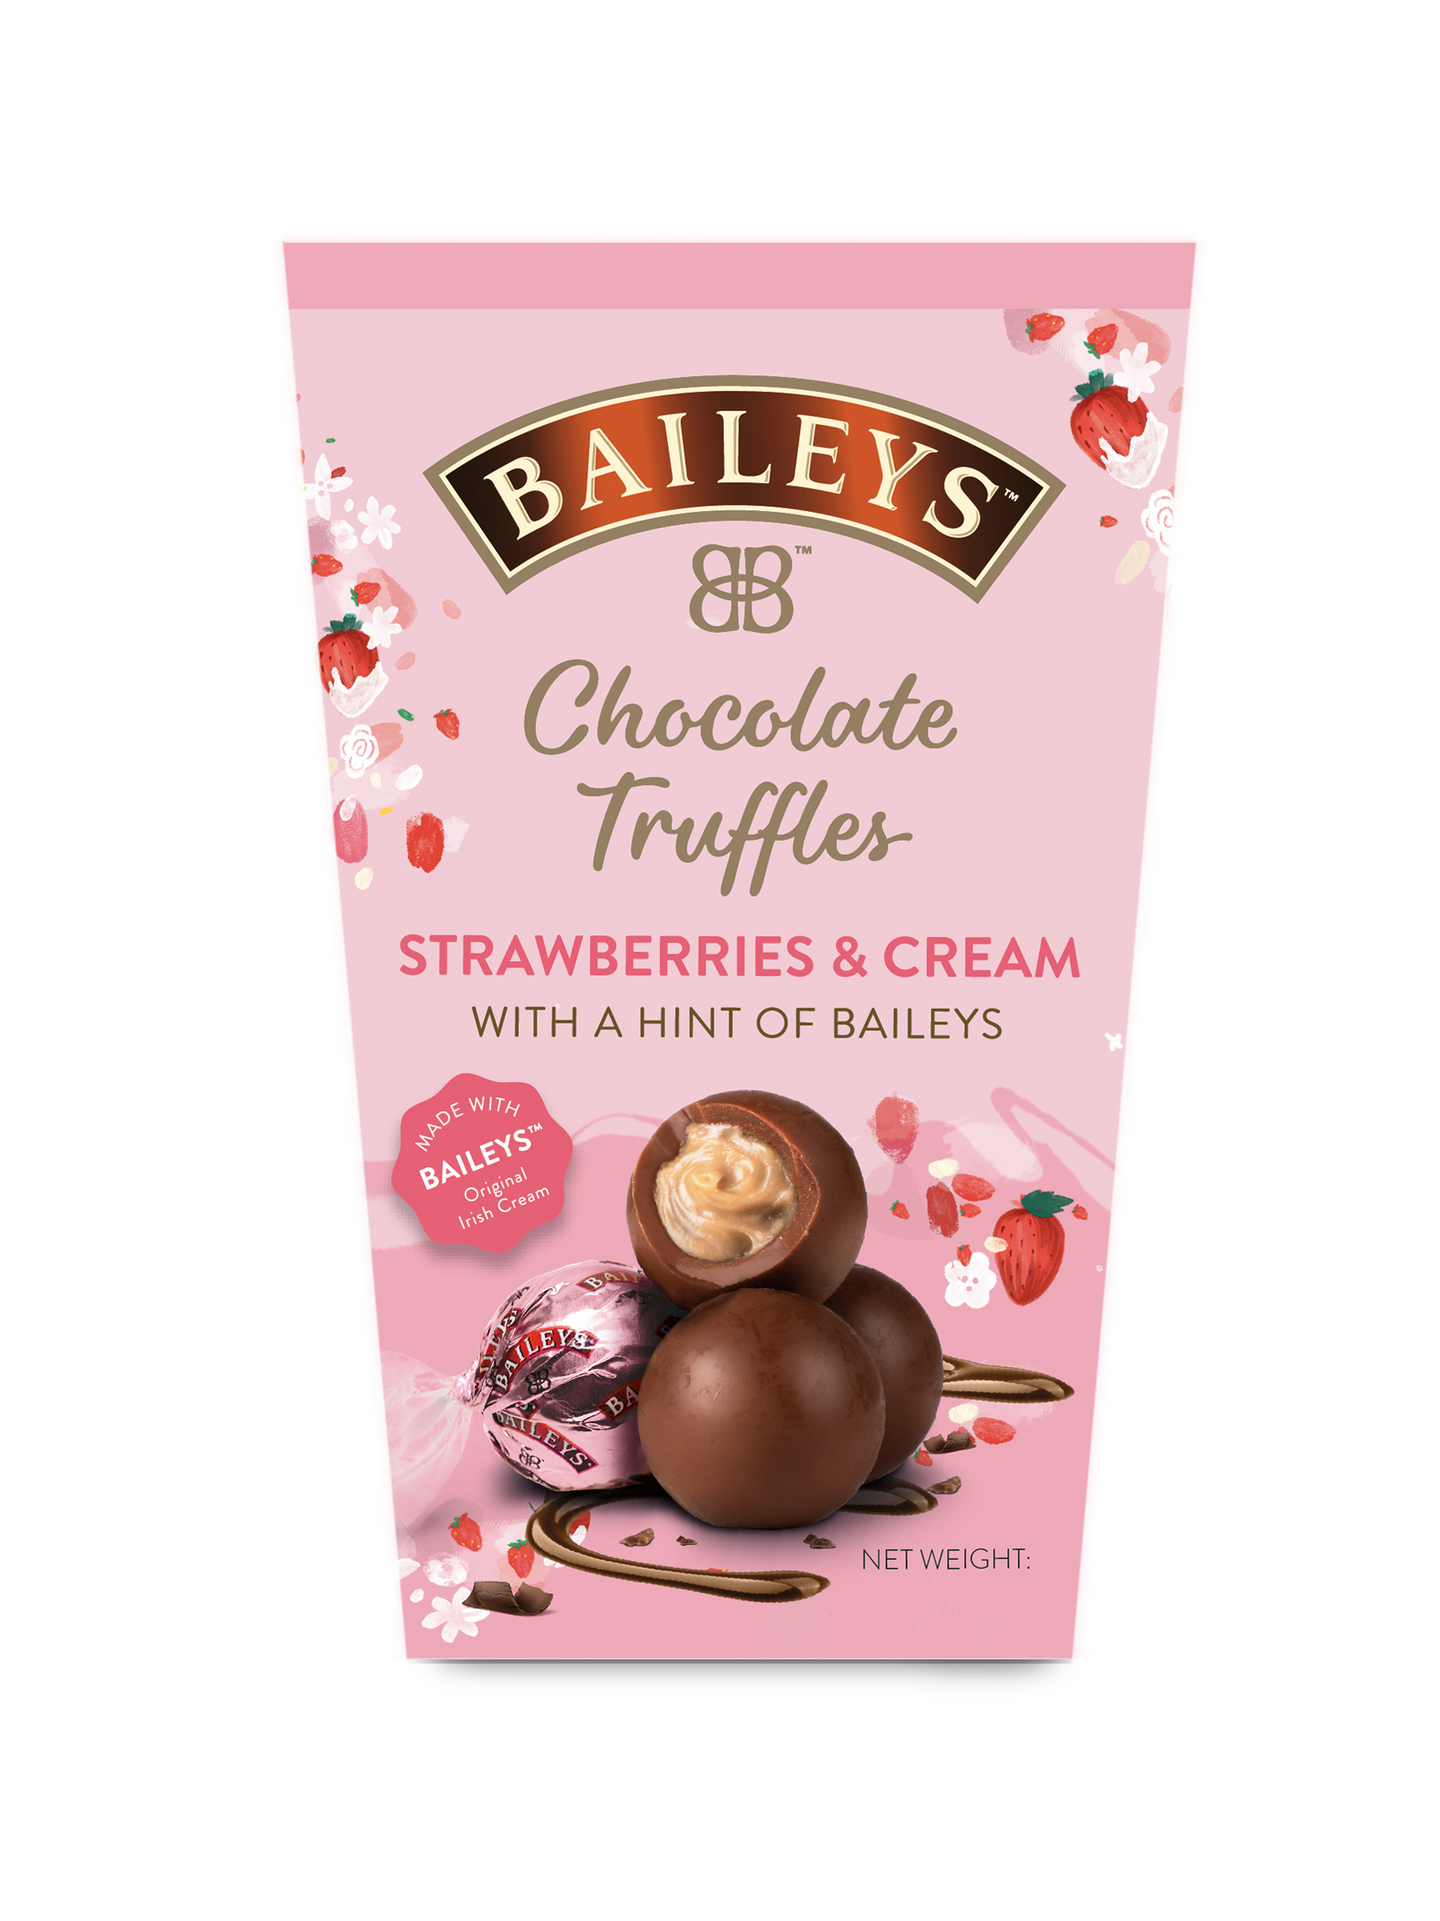 Baileys Chocolate Truffles 205g strawberries & cream